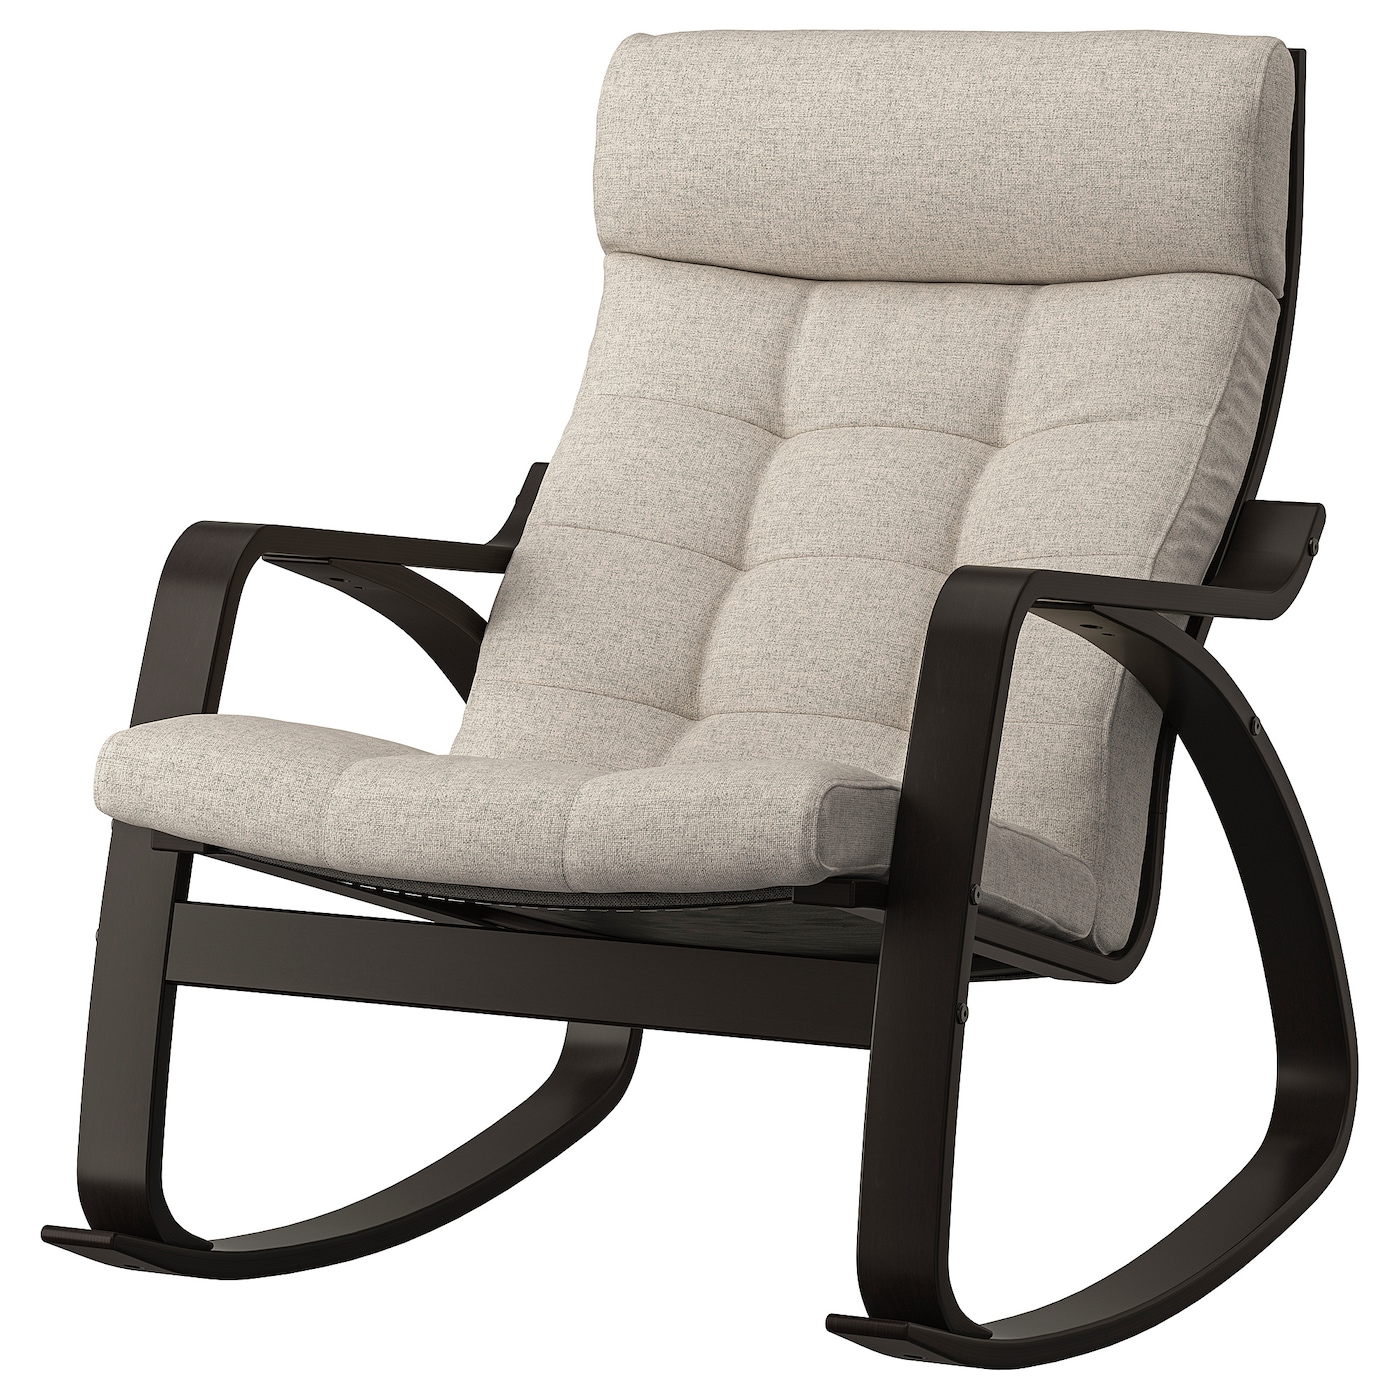 ПОЭНГ Кресло-качалка, черно-коричневый/Гуннаред бежевый POÄNG IKEA детское электрическое кресло качалка удобное кресло качалка бесплатная установка